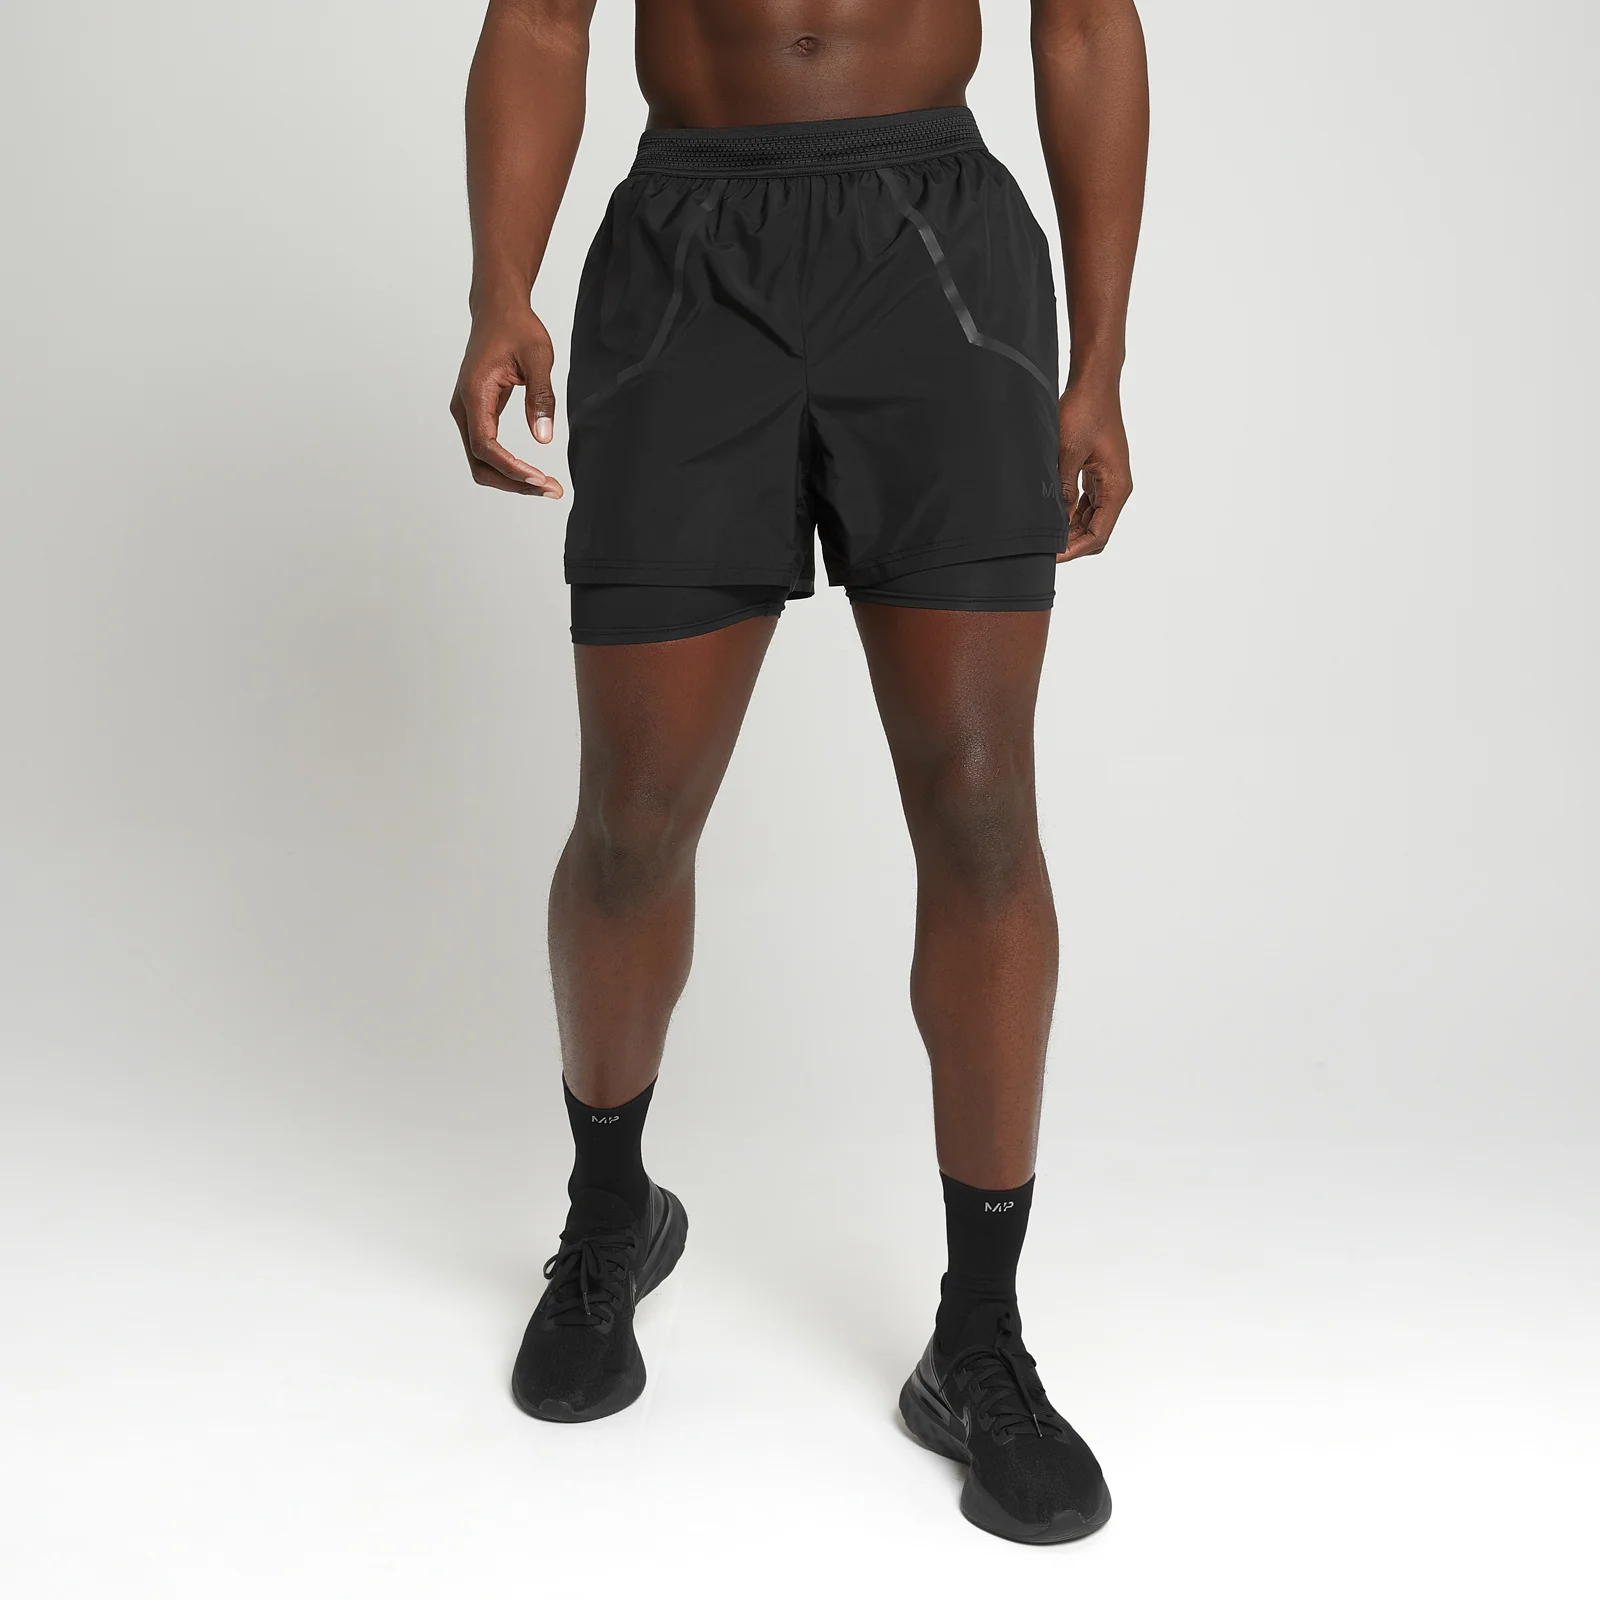 MP Men's Velocity Ultra 2 In 1 Shorts - Black Image 1